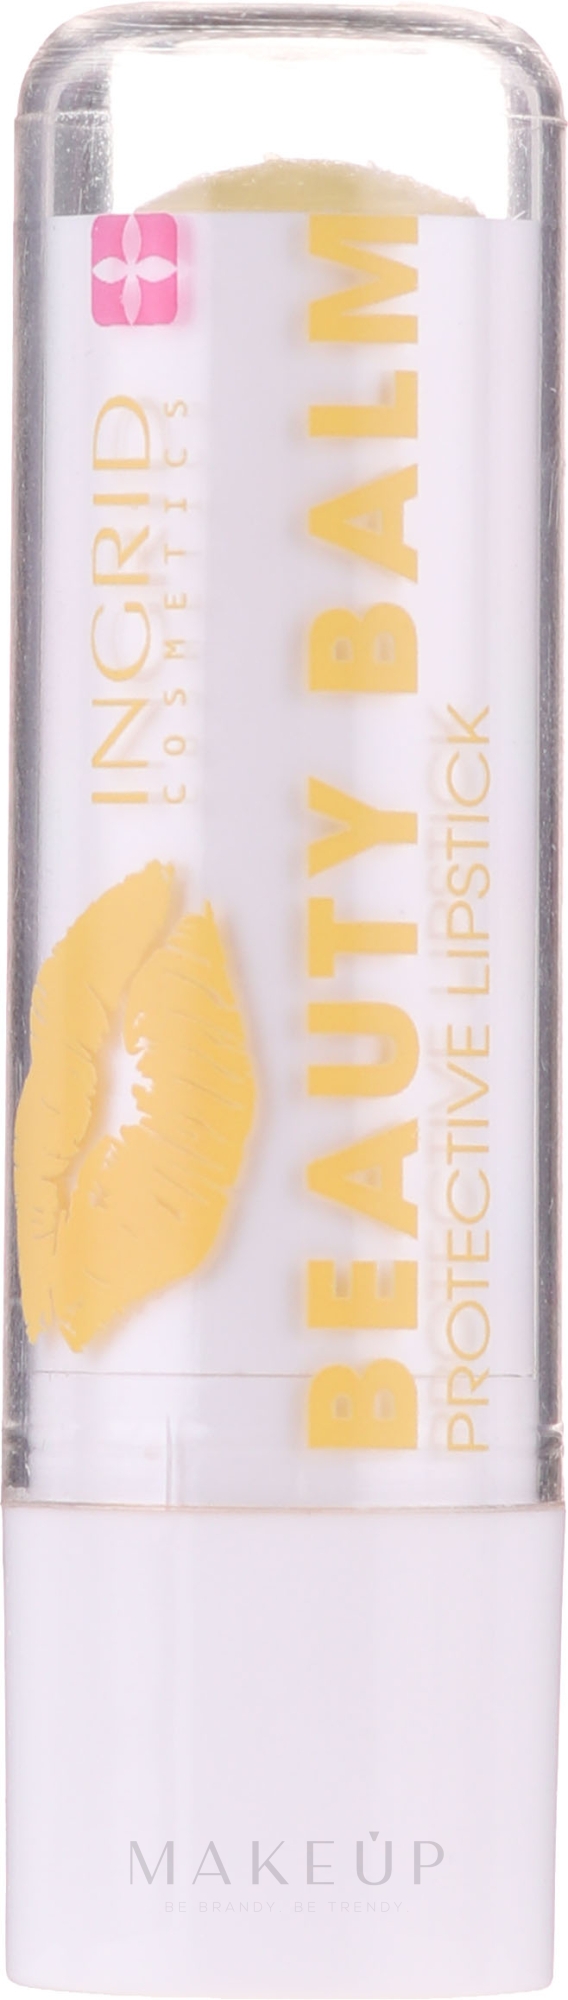 Schützender Lippenbalsam mit Duft von exotischen Früchten - Ingrid Cosmetics Beauty Balm Protective Lipstick  — Bild Süßer Honig